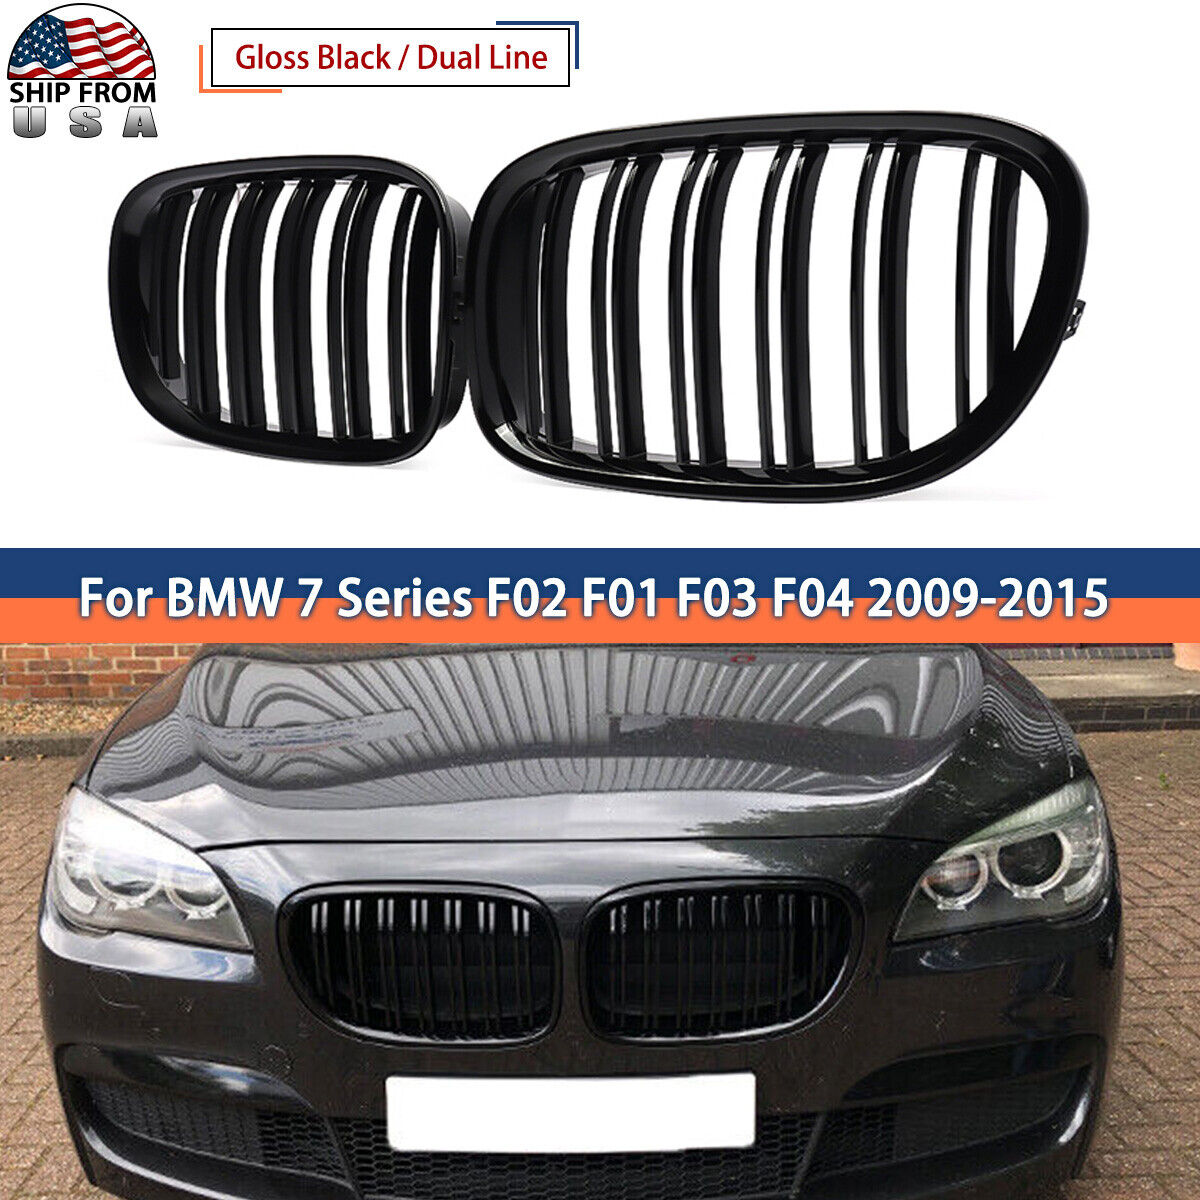 Gloss Black Front Kidney Grill for BMW F01 F02 7 Series 740i 750li 760li 2009-15